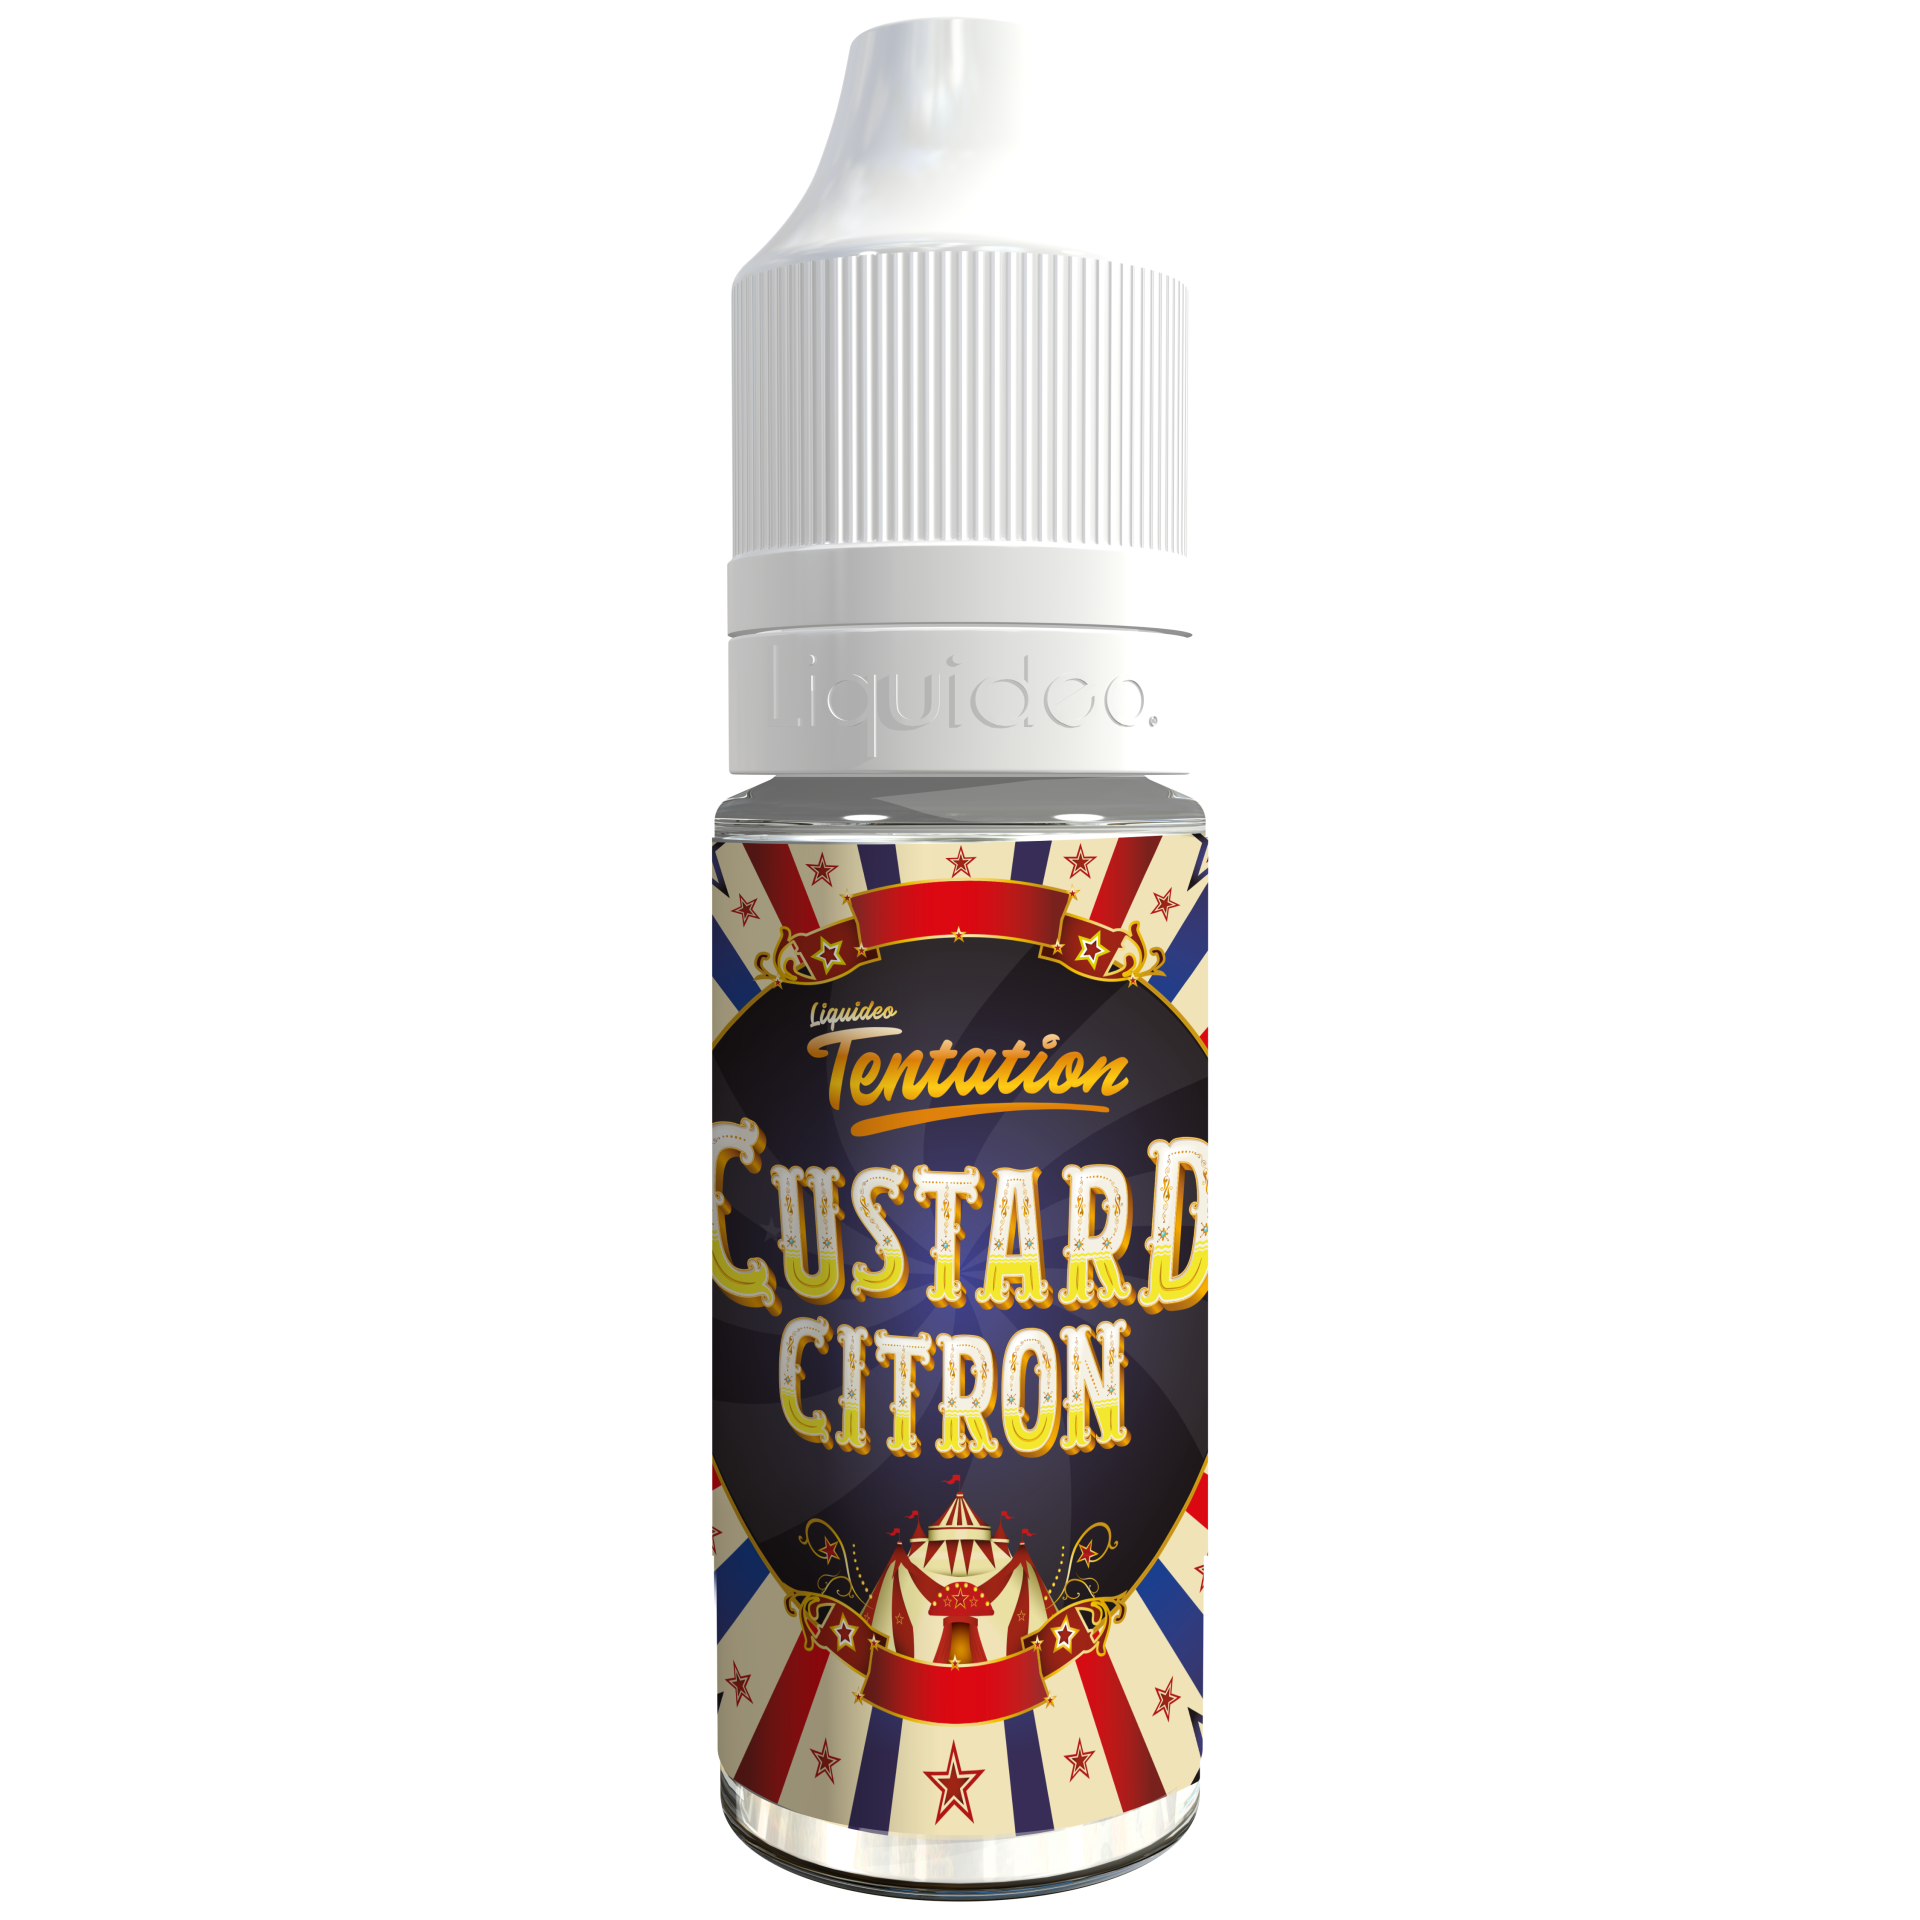 Liquideo Custard Citron (10ml)